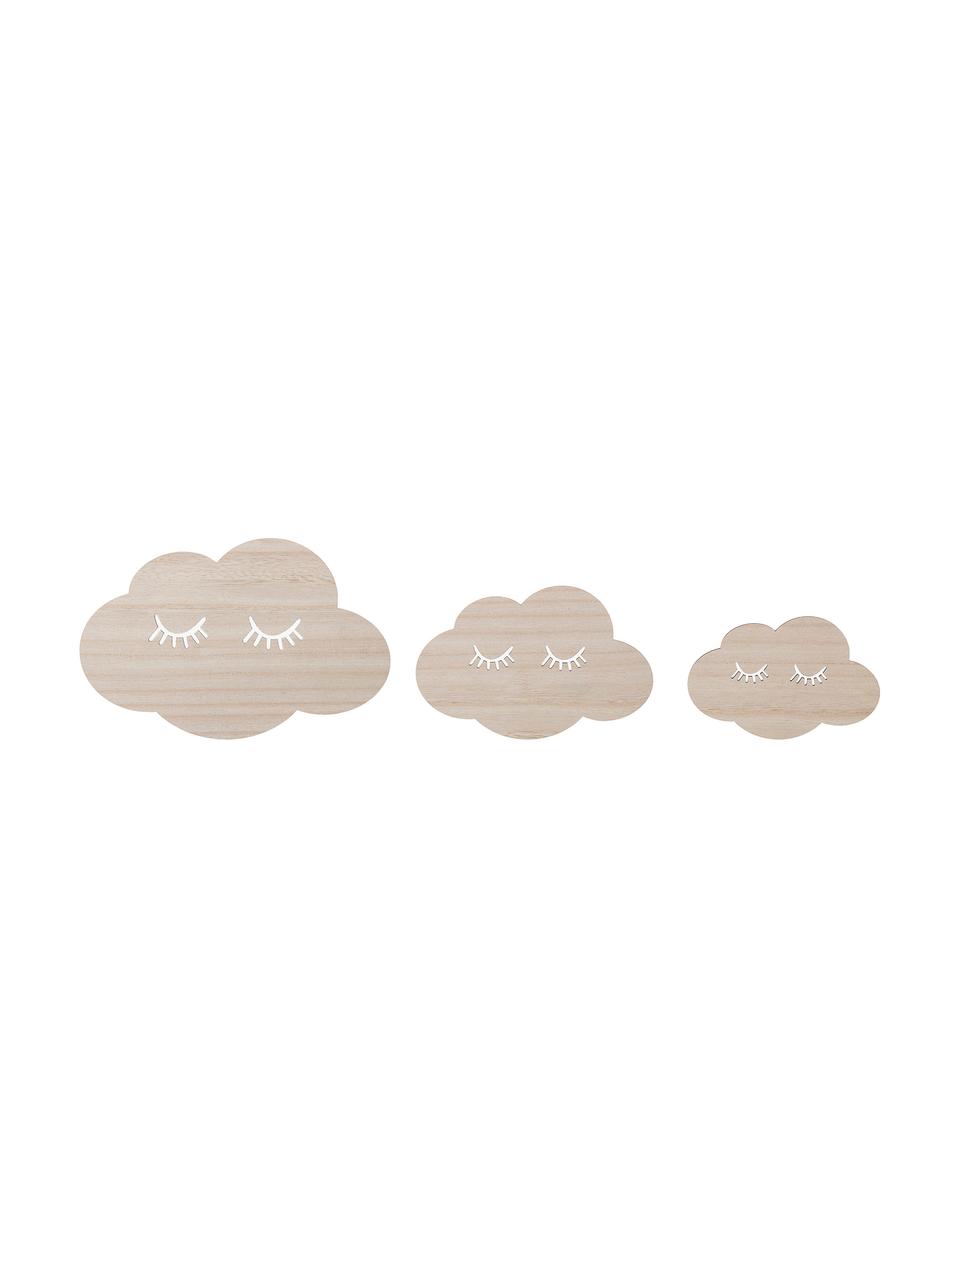 Nástenné dekorácie Clouds, 3 diely, Béžová